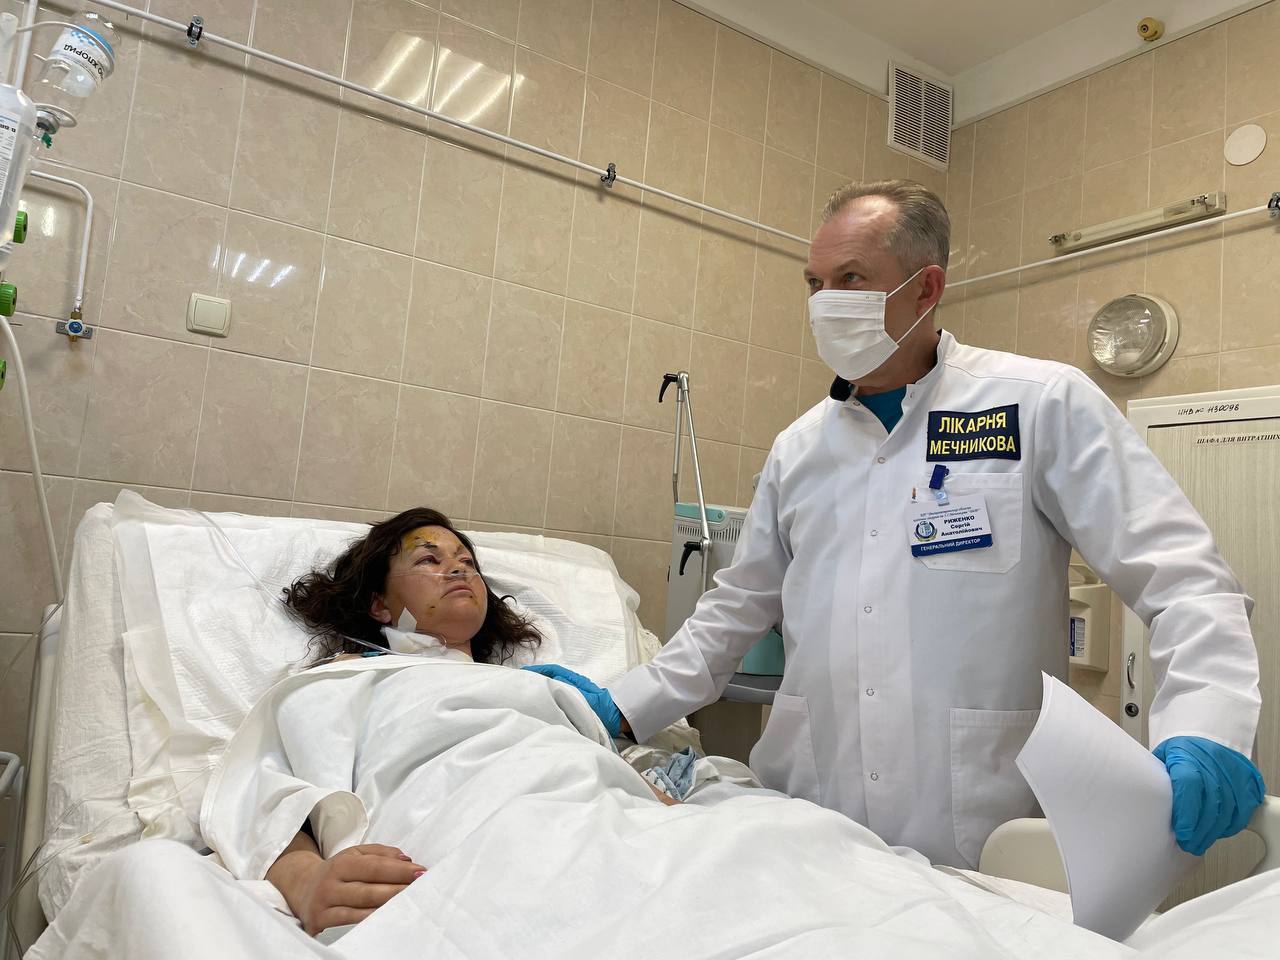 Після поранення Лариса Борисенко перенесла кілька операцій. Фото:facebook.com/rsa010963